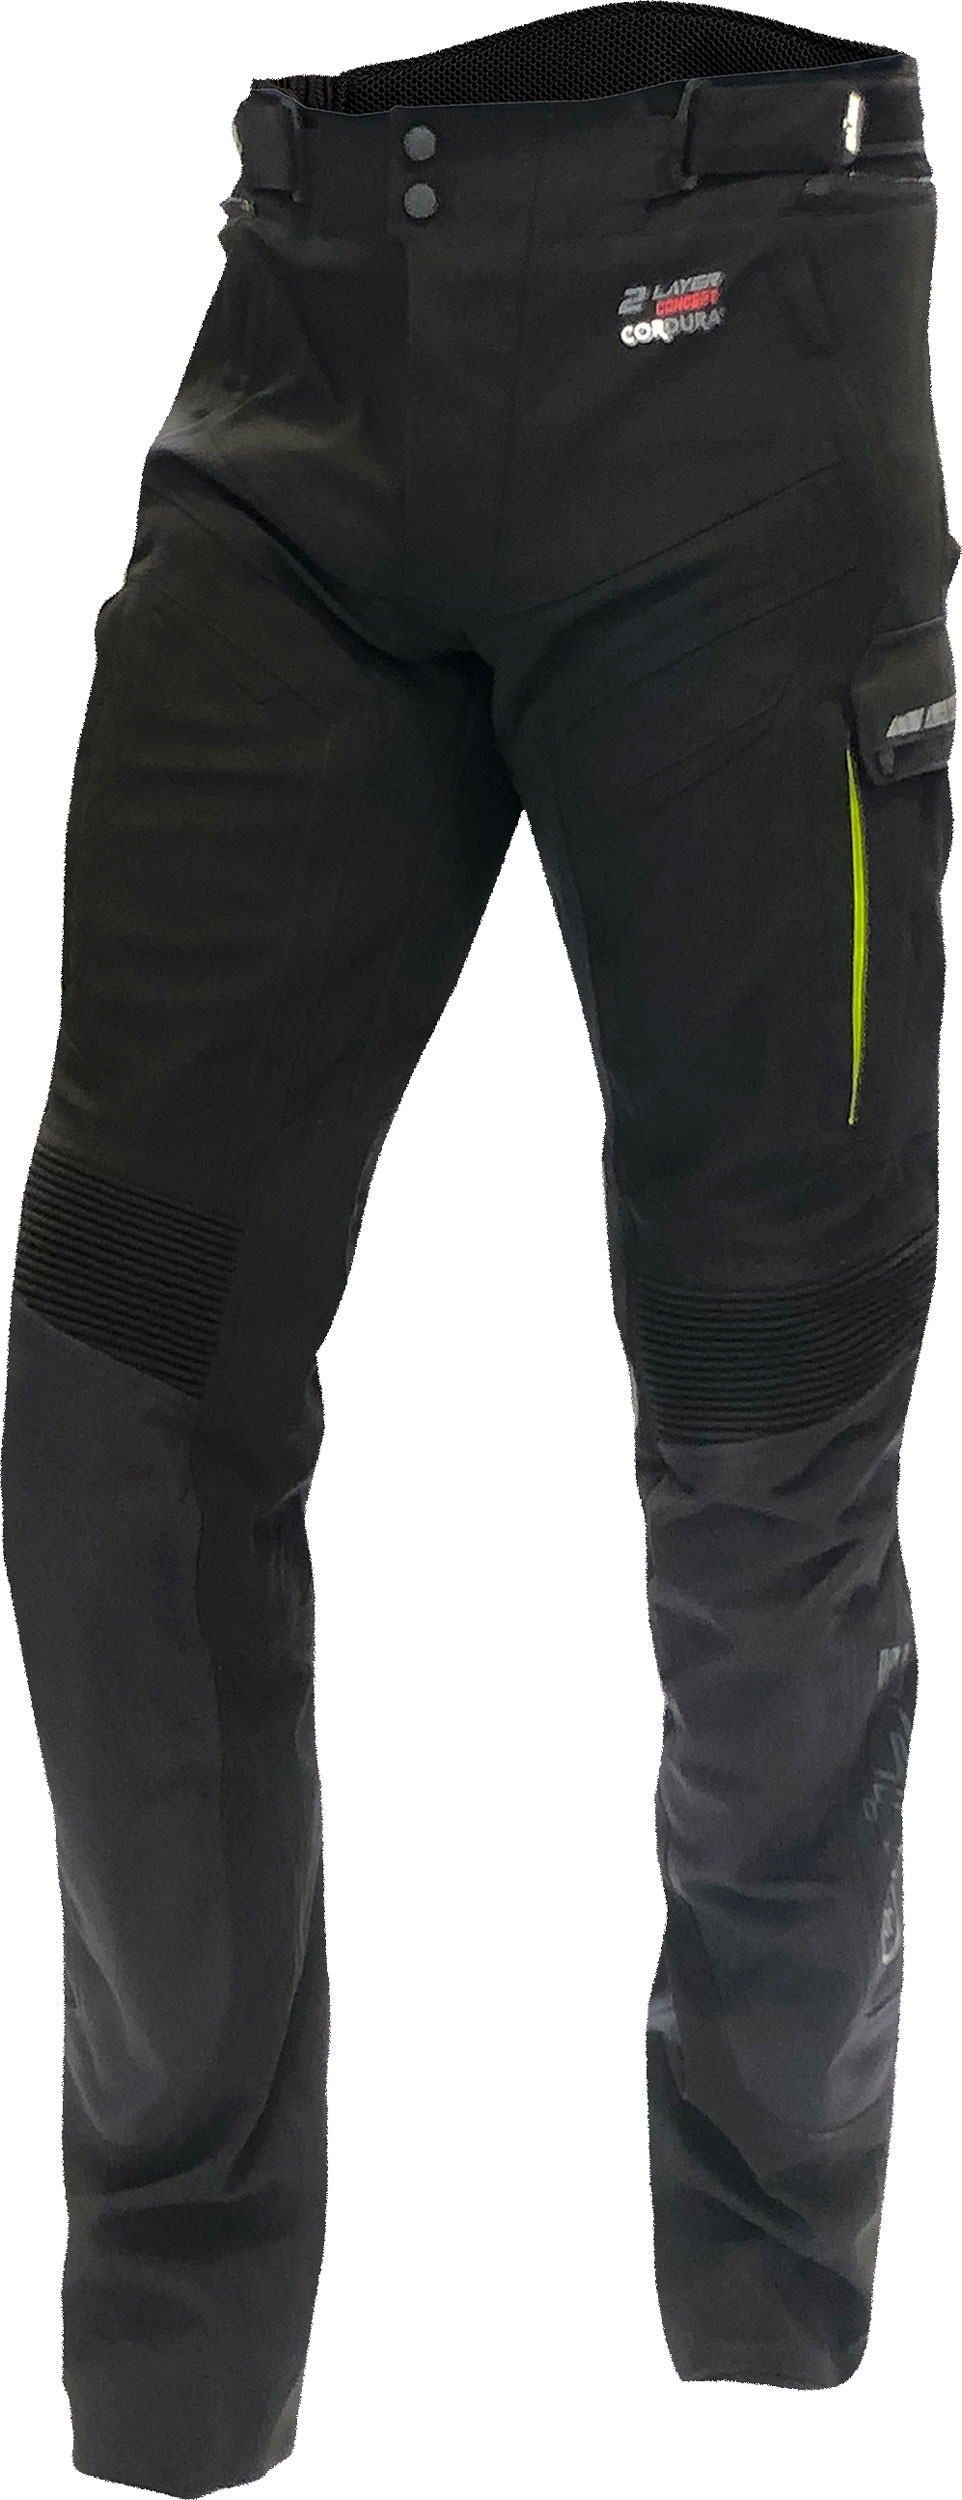 Büse Storm, textile pants waterproof women , color: Black/Neon-Yellow , size: 44